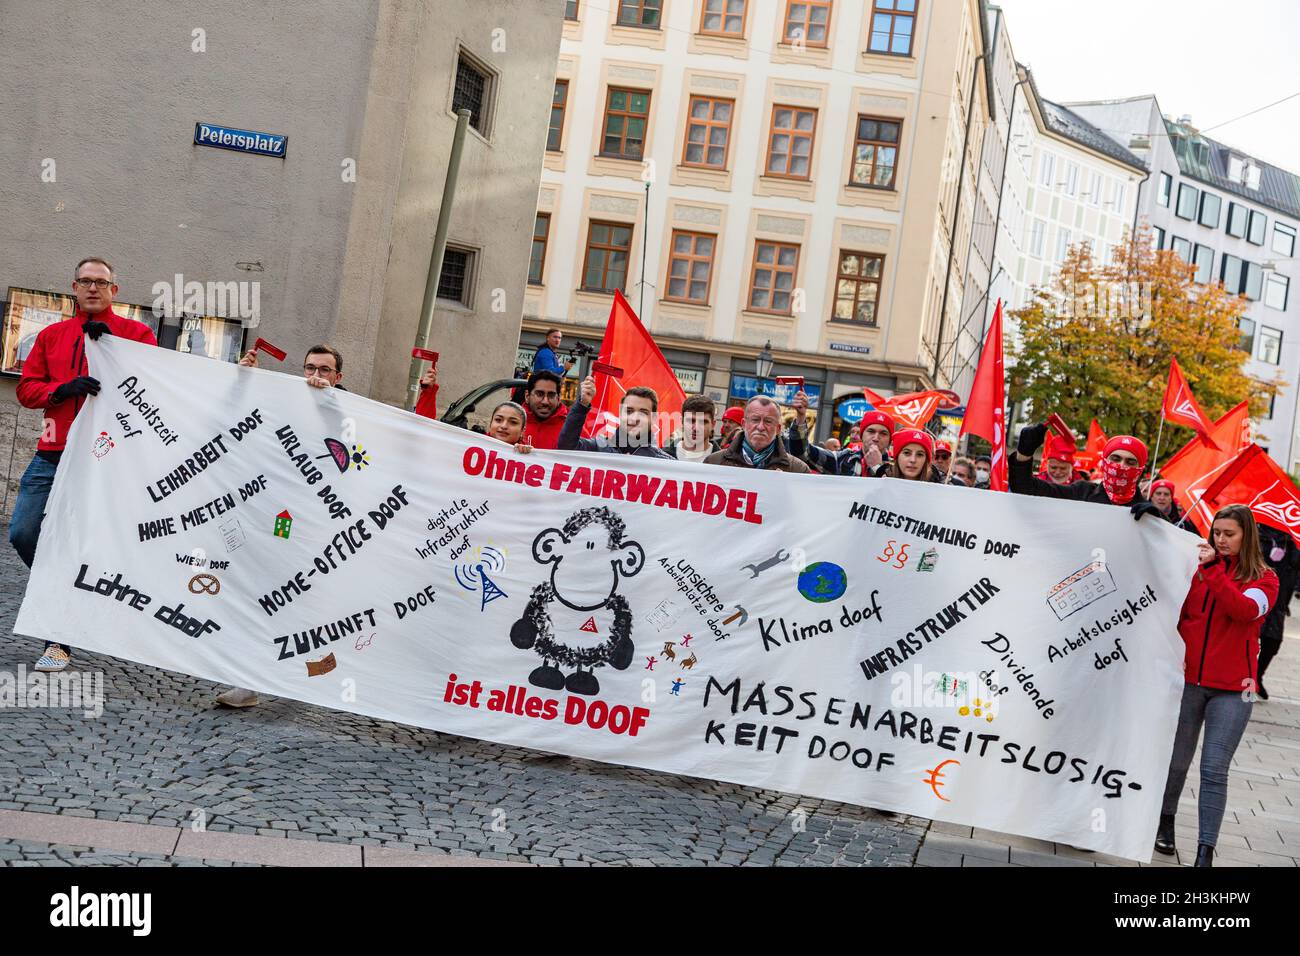 Am 29. Oktober 2021 sammeln sich ein paar wenige Hundert IG Metaller in München um von verschiedenen Fingern zu einer Kundgebung am Odeonsplatz zu demontieren. Sie bilden von den Koalitionsverhandlern von SPD, Bündnis 90/die Grünen und FDP, unter anderem Klimagerechtigkeit, faire Löhne, ein Ende der Schuldenbrems und keine Flexibilisierung der Arbeitszeiten. - am 29. Oktober 2021 versammelten sich einige Hundert Gewerkschafter der IG Metall in München, um vor der Fragestunde von CSU, SPD, Grünen und FDP zu protestieren. Sie fordern Klimagerechtigkeit, faire Löhne, ein Ende der Schuldenbremse und kein Fle Stockfoto